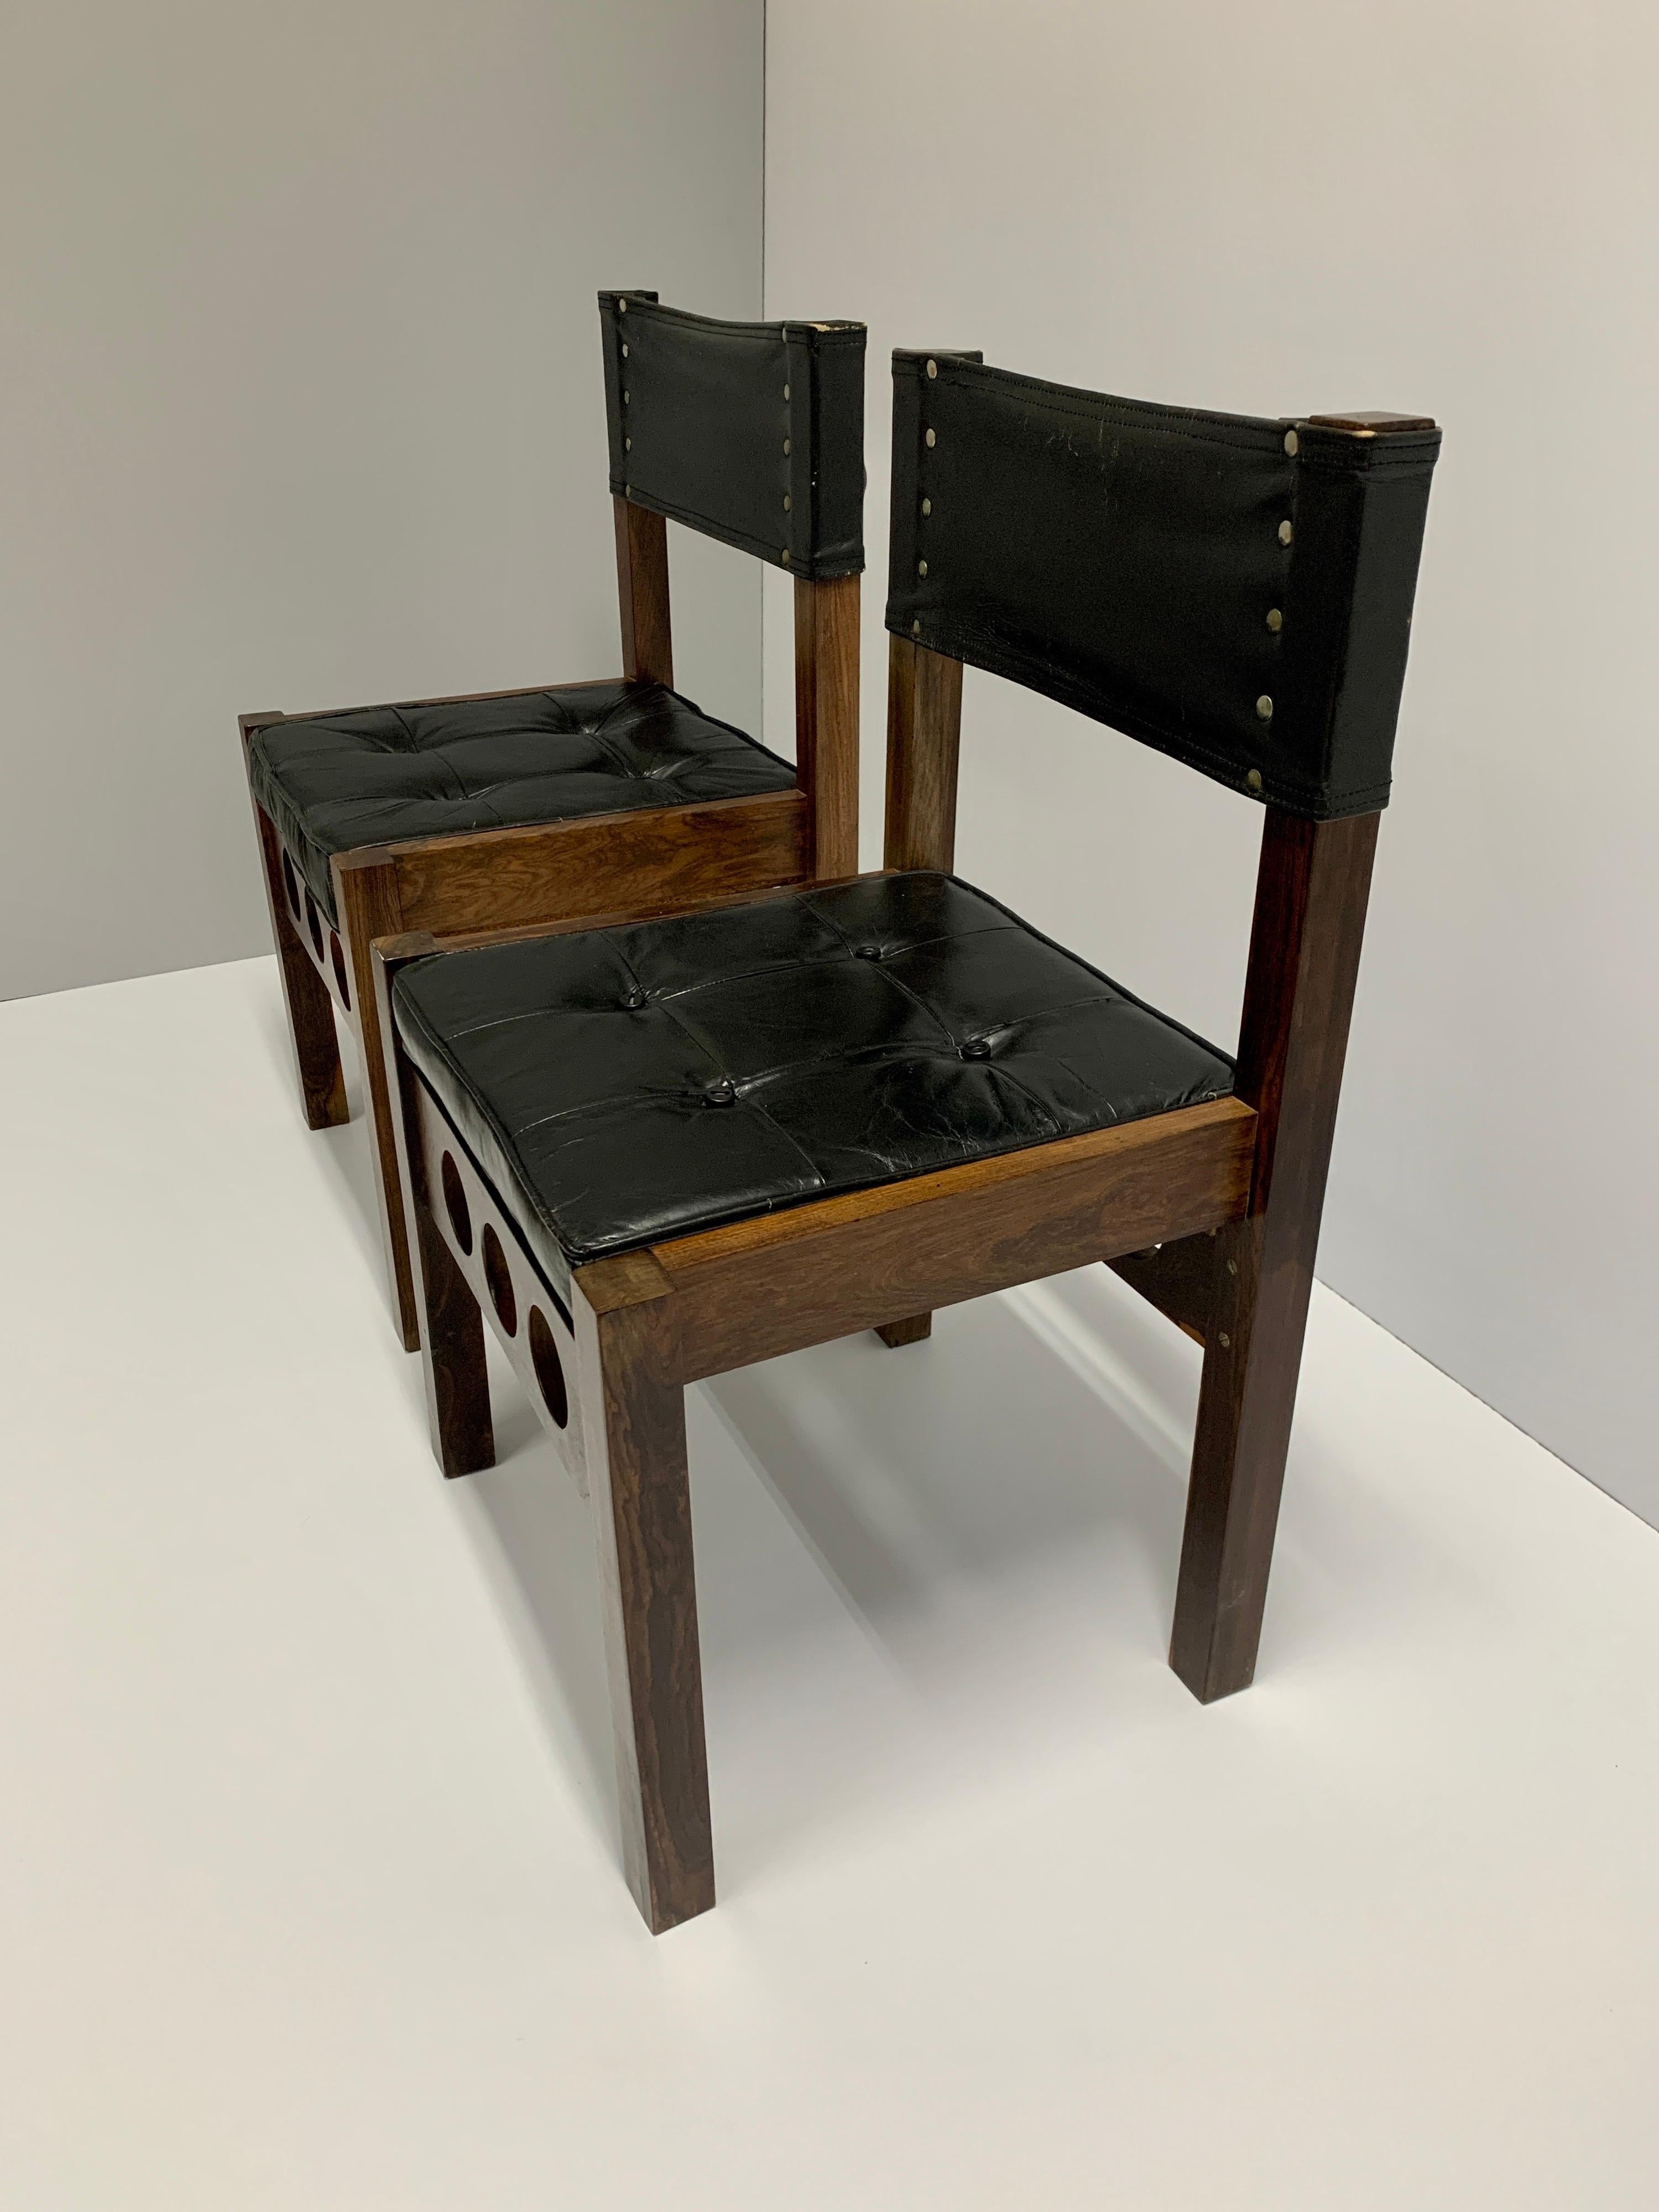 Paire de chaises de salle à manger Don Shoemaker (F84C), cuir d'origine sur l'assise et le dossier, assise réversible et boutons d'origine également.
Né dans le Nebraska, Don S. Shoemaker a étudié la peinture à la Fine Arts Institution de Chicago.